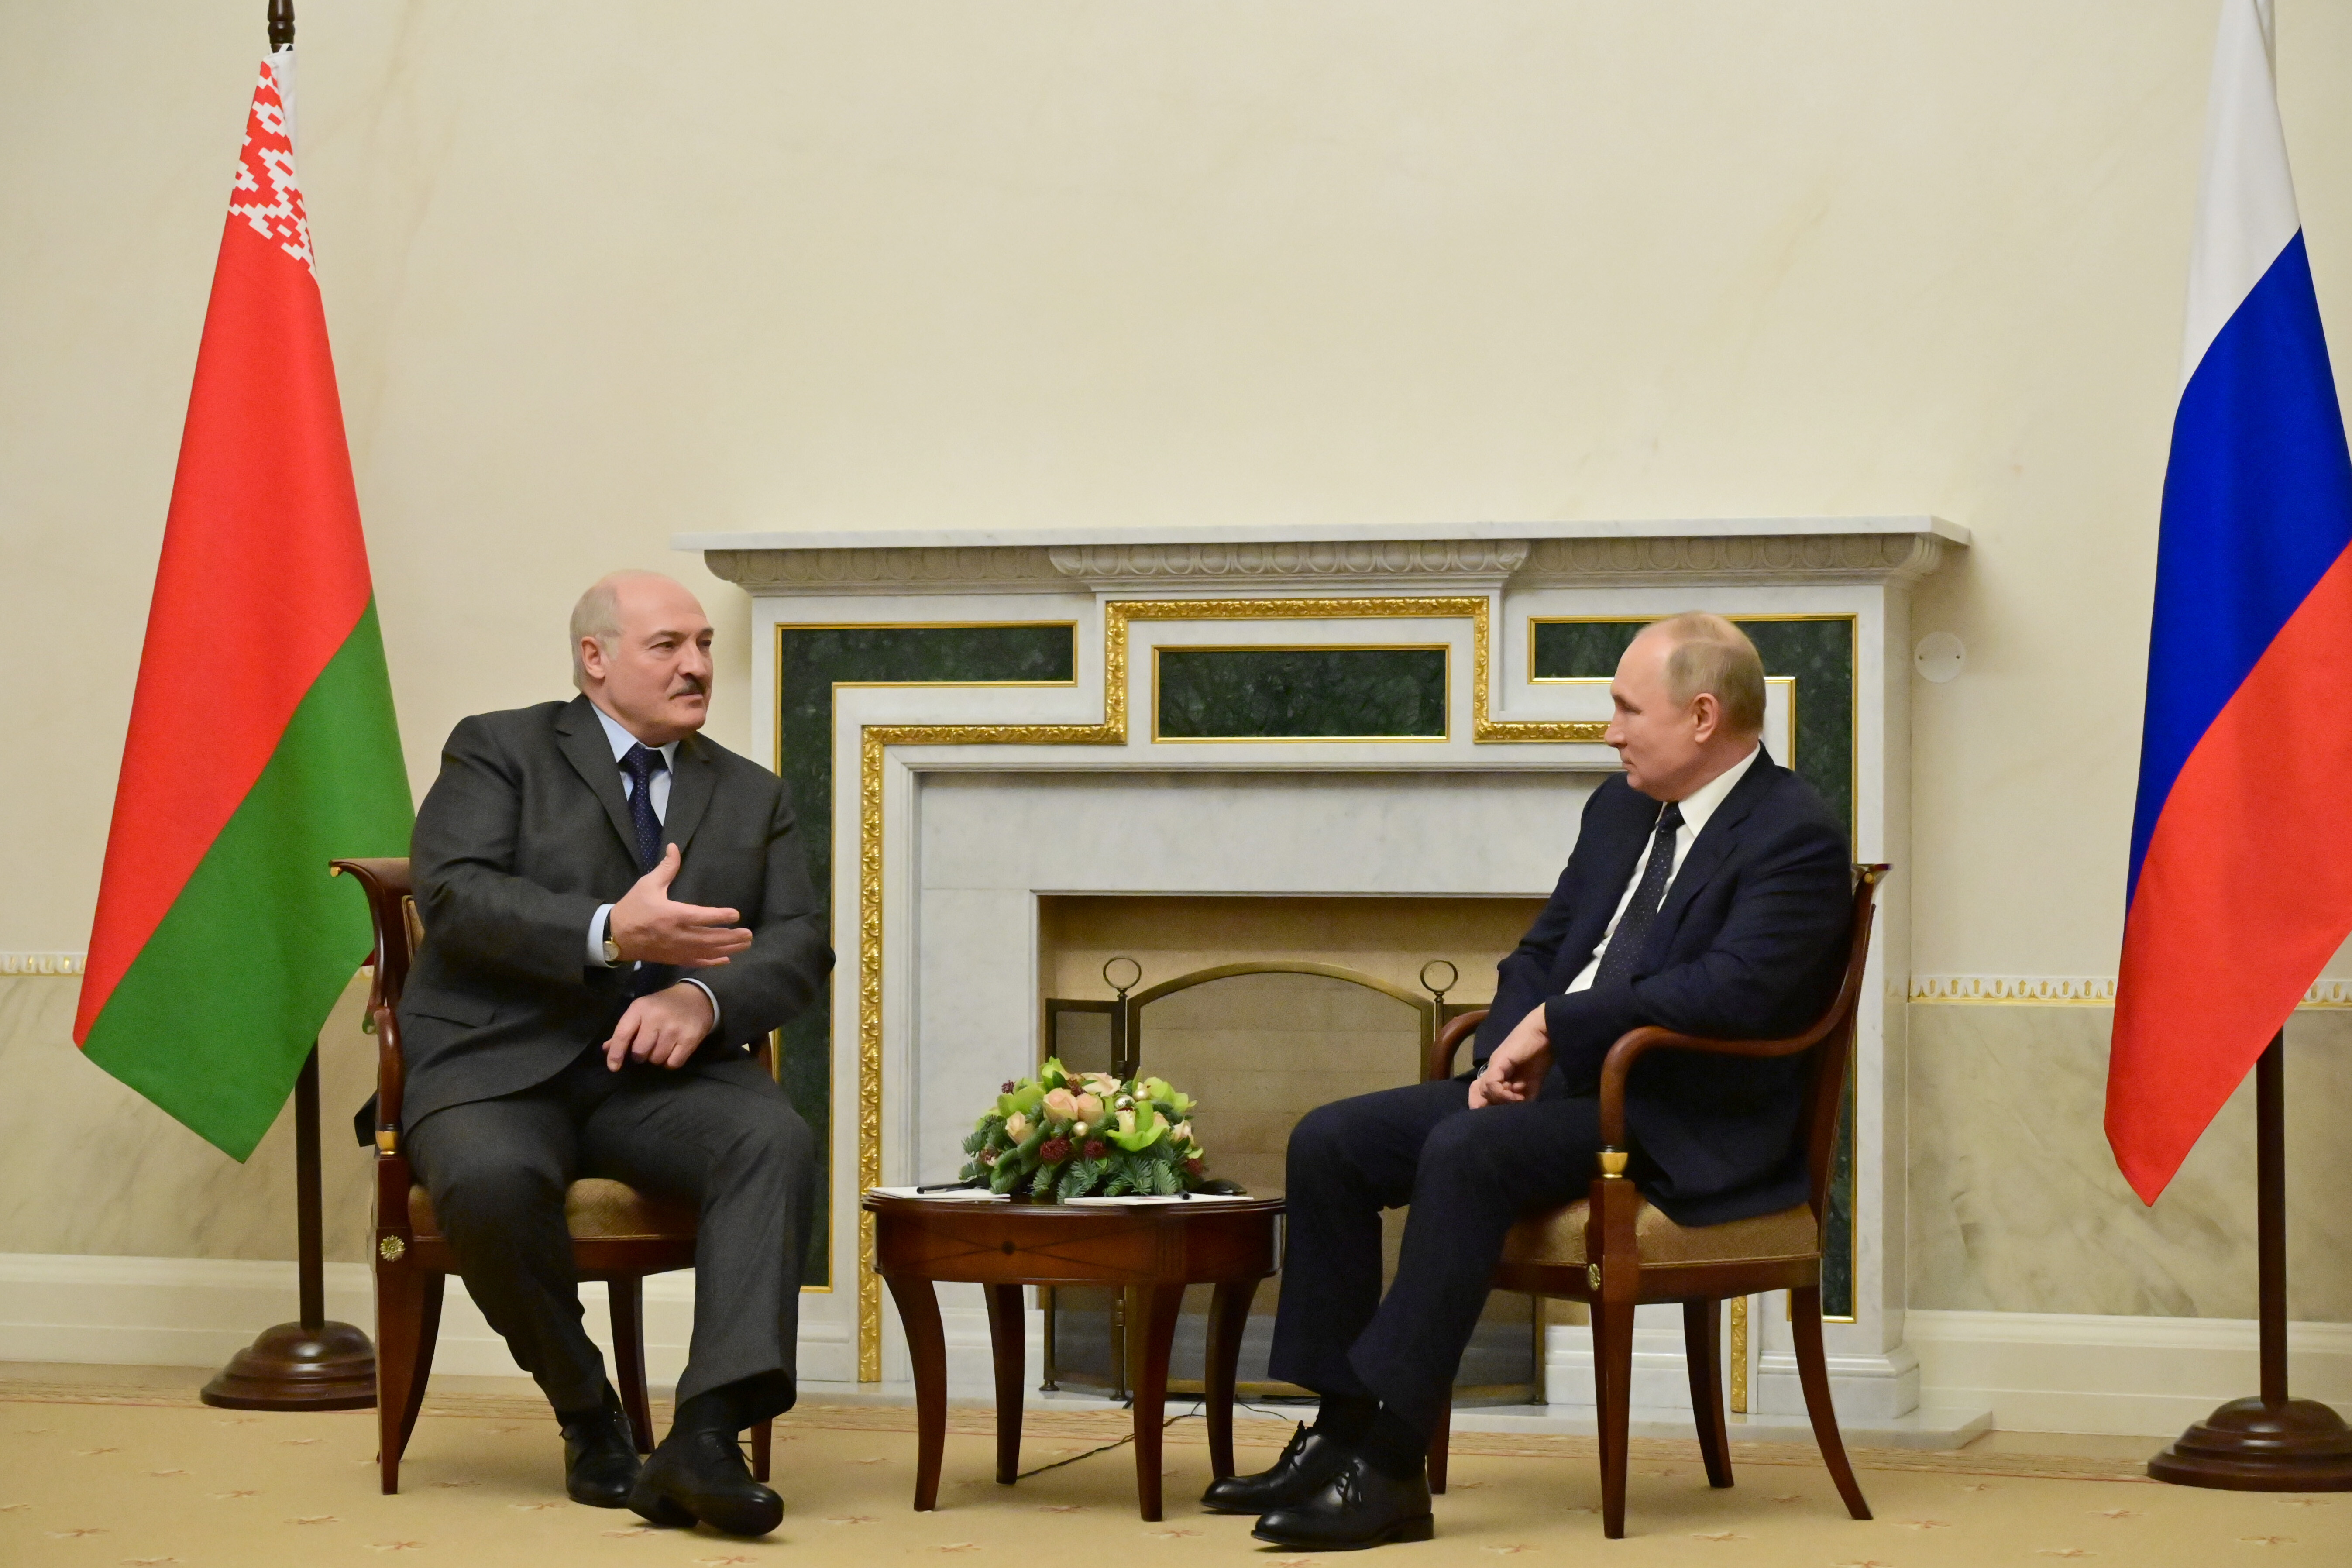 Поздравление с единением россии и белоруссии. Встреча Путина и Лукашенко 2022.